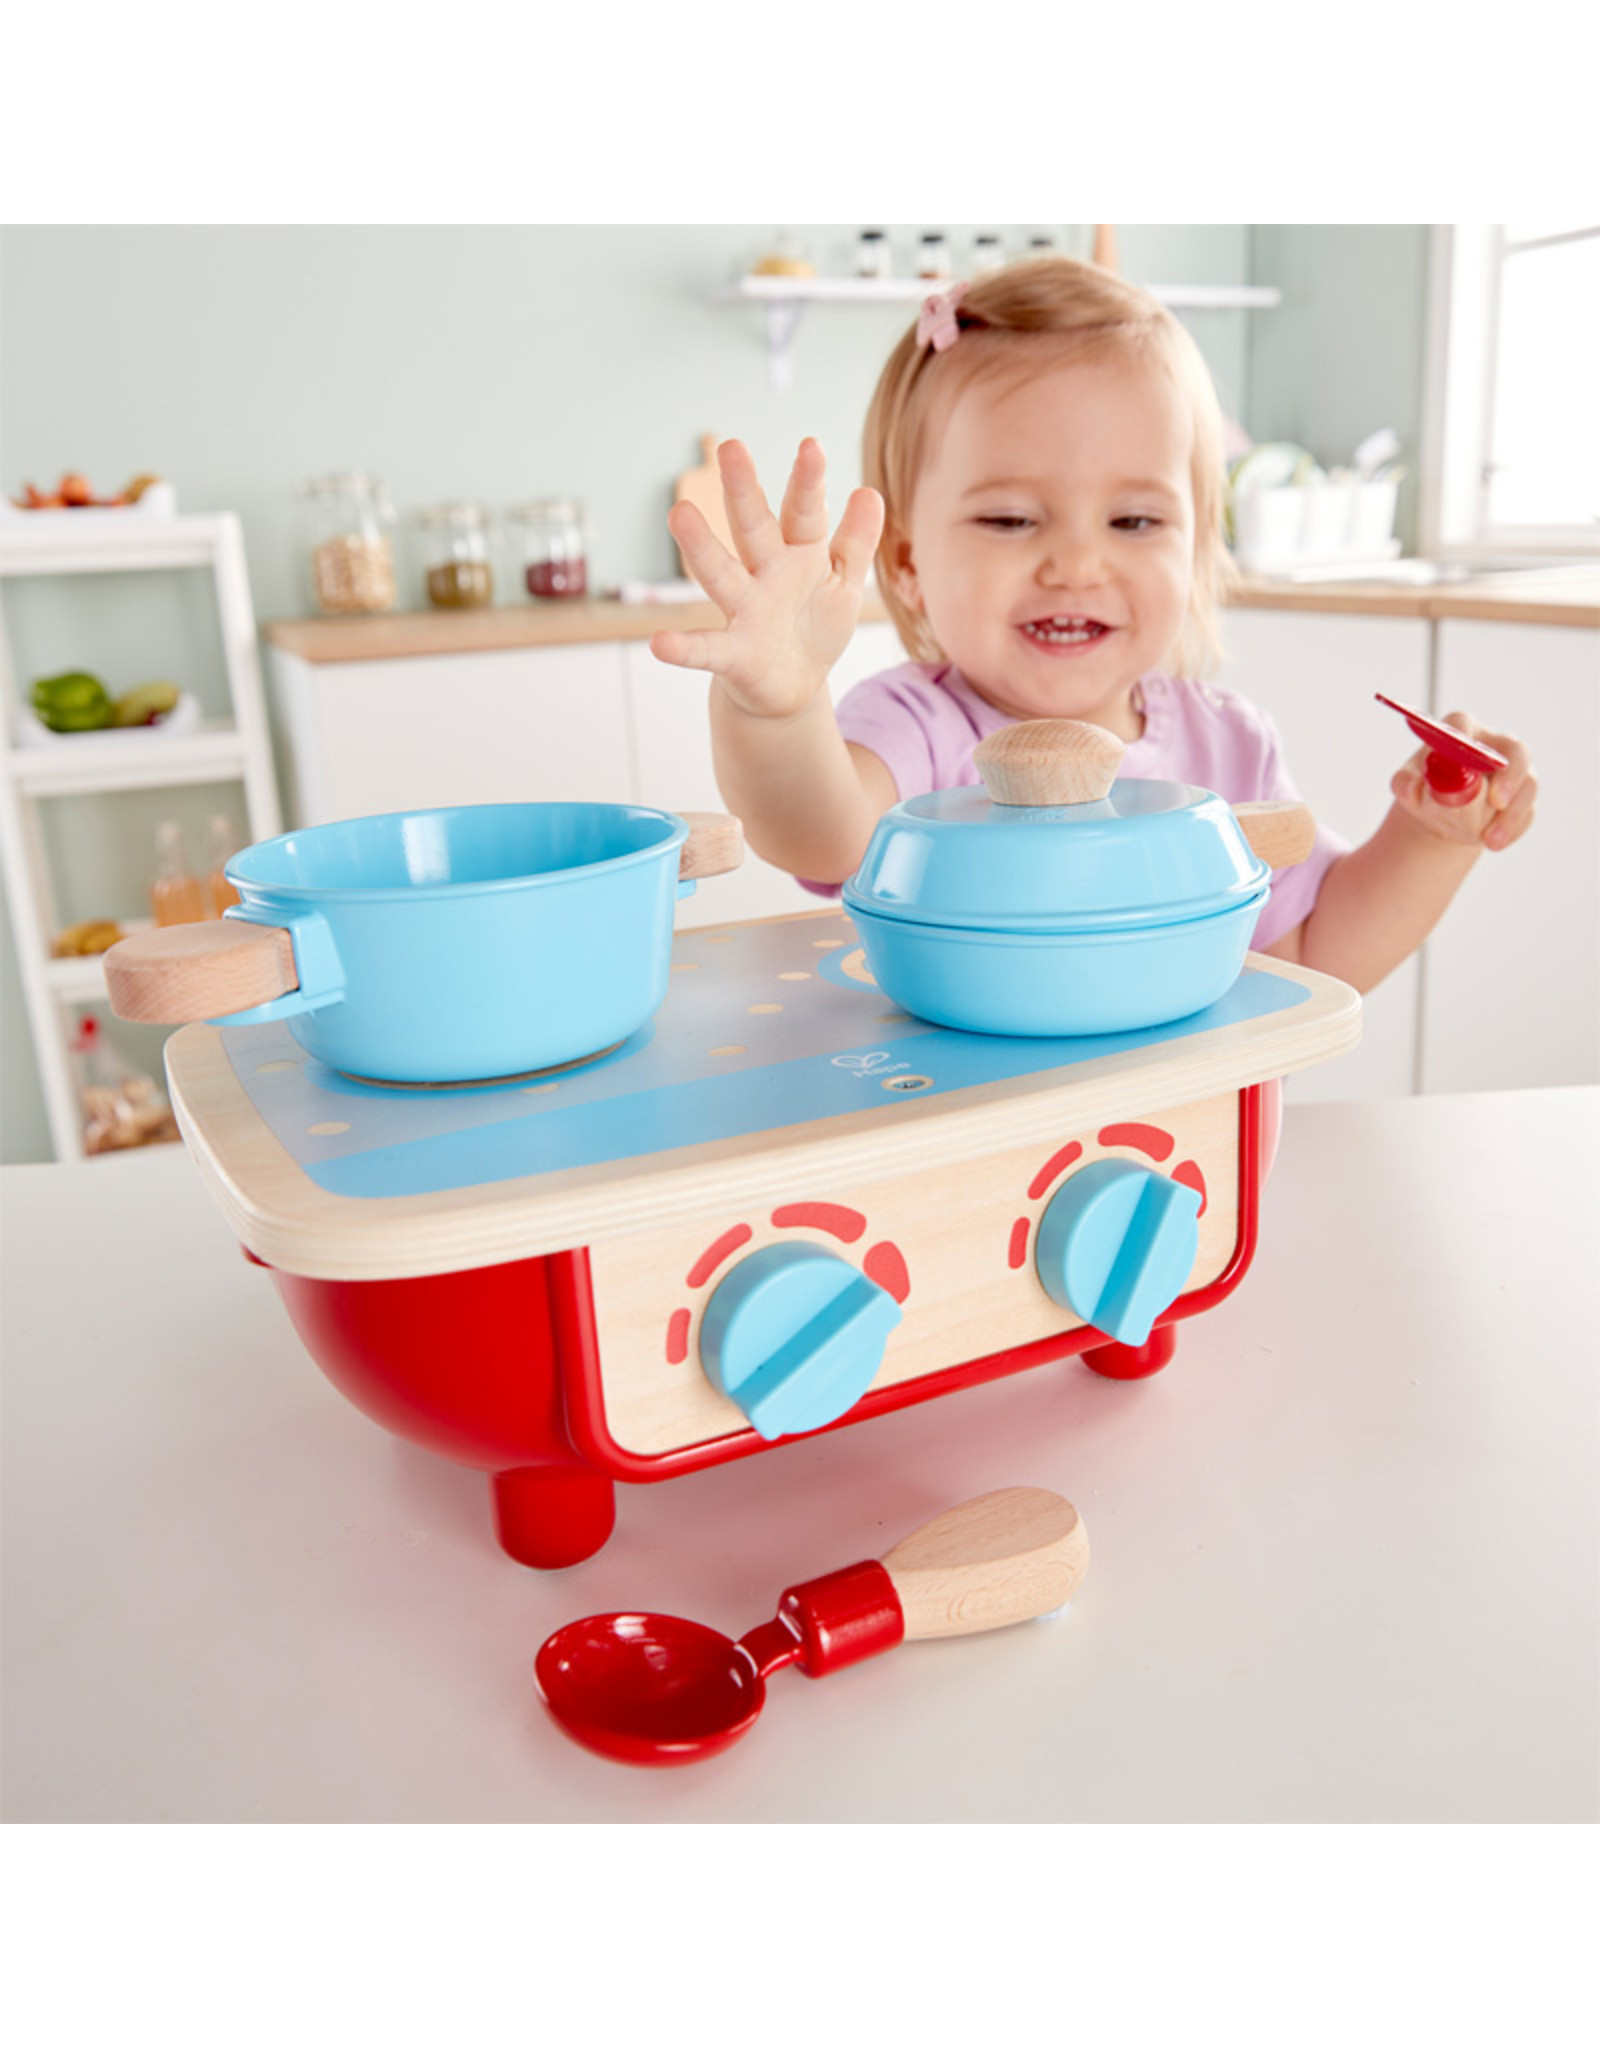 Hape Hape Toddler Kitchen Set